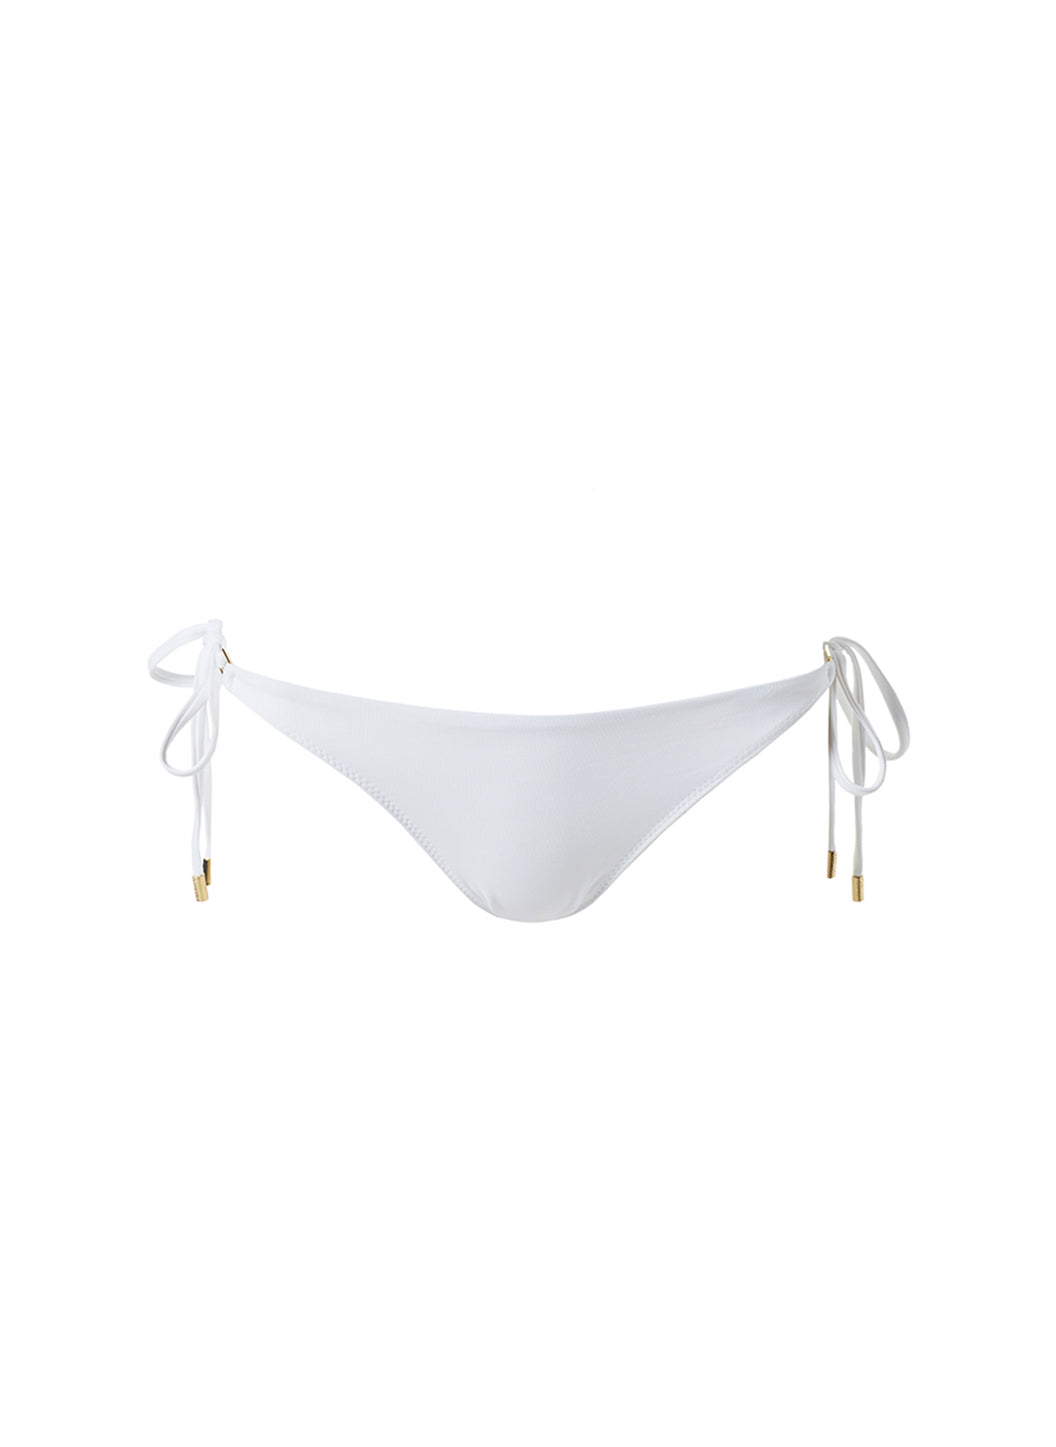 Melissa Odabash Hamptons White Ridges Over The Shoulder Bikini Top